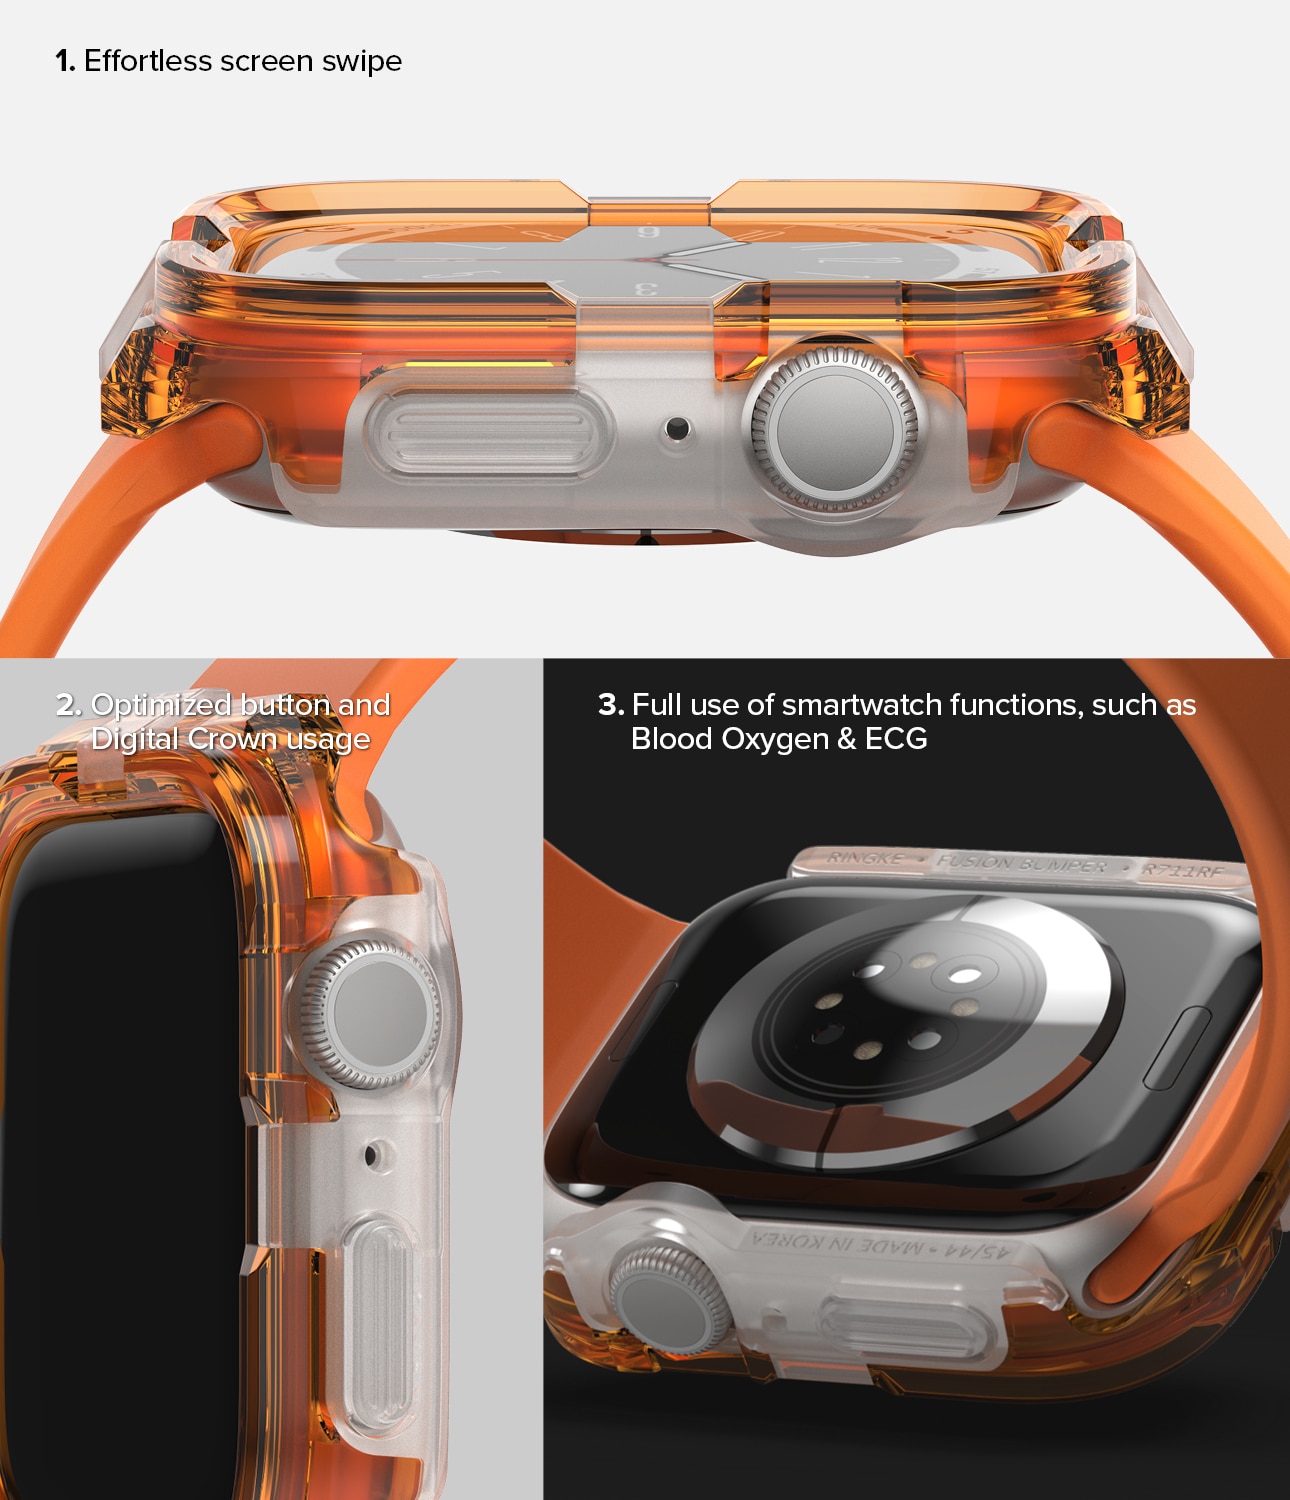 Cover Fusion Bumper Apple Watch SE 44mm Neon Orange